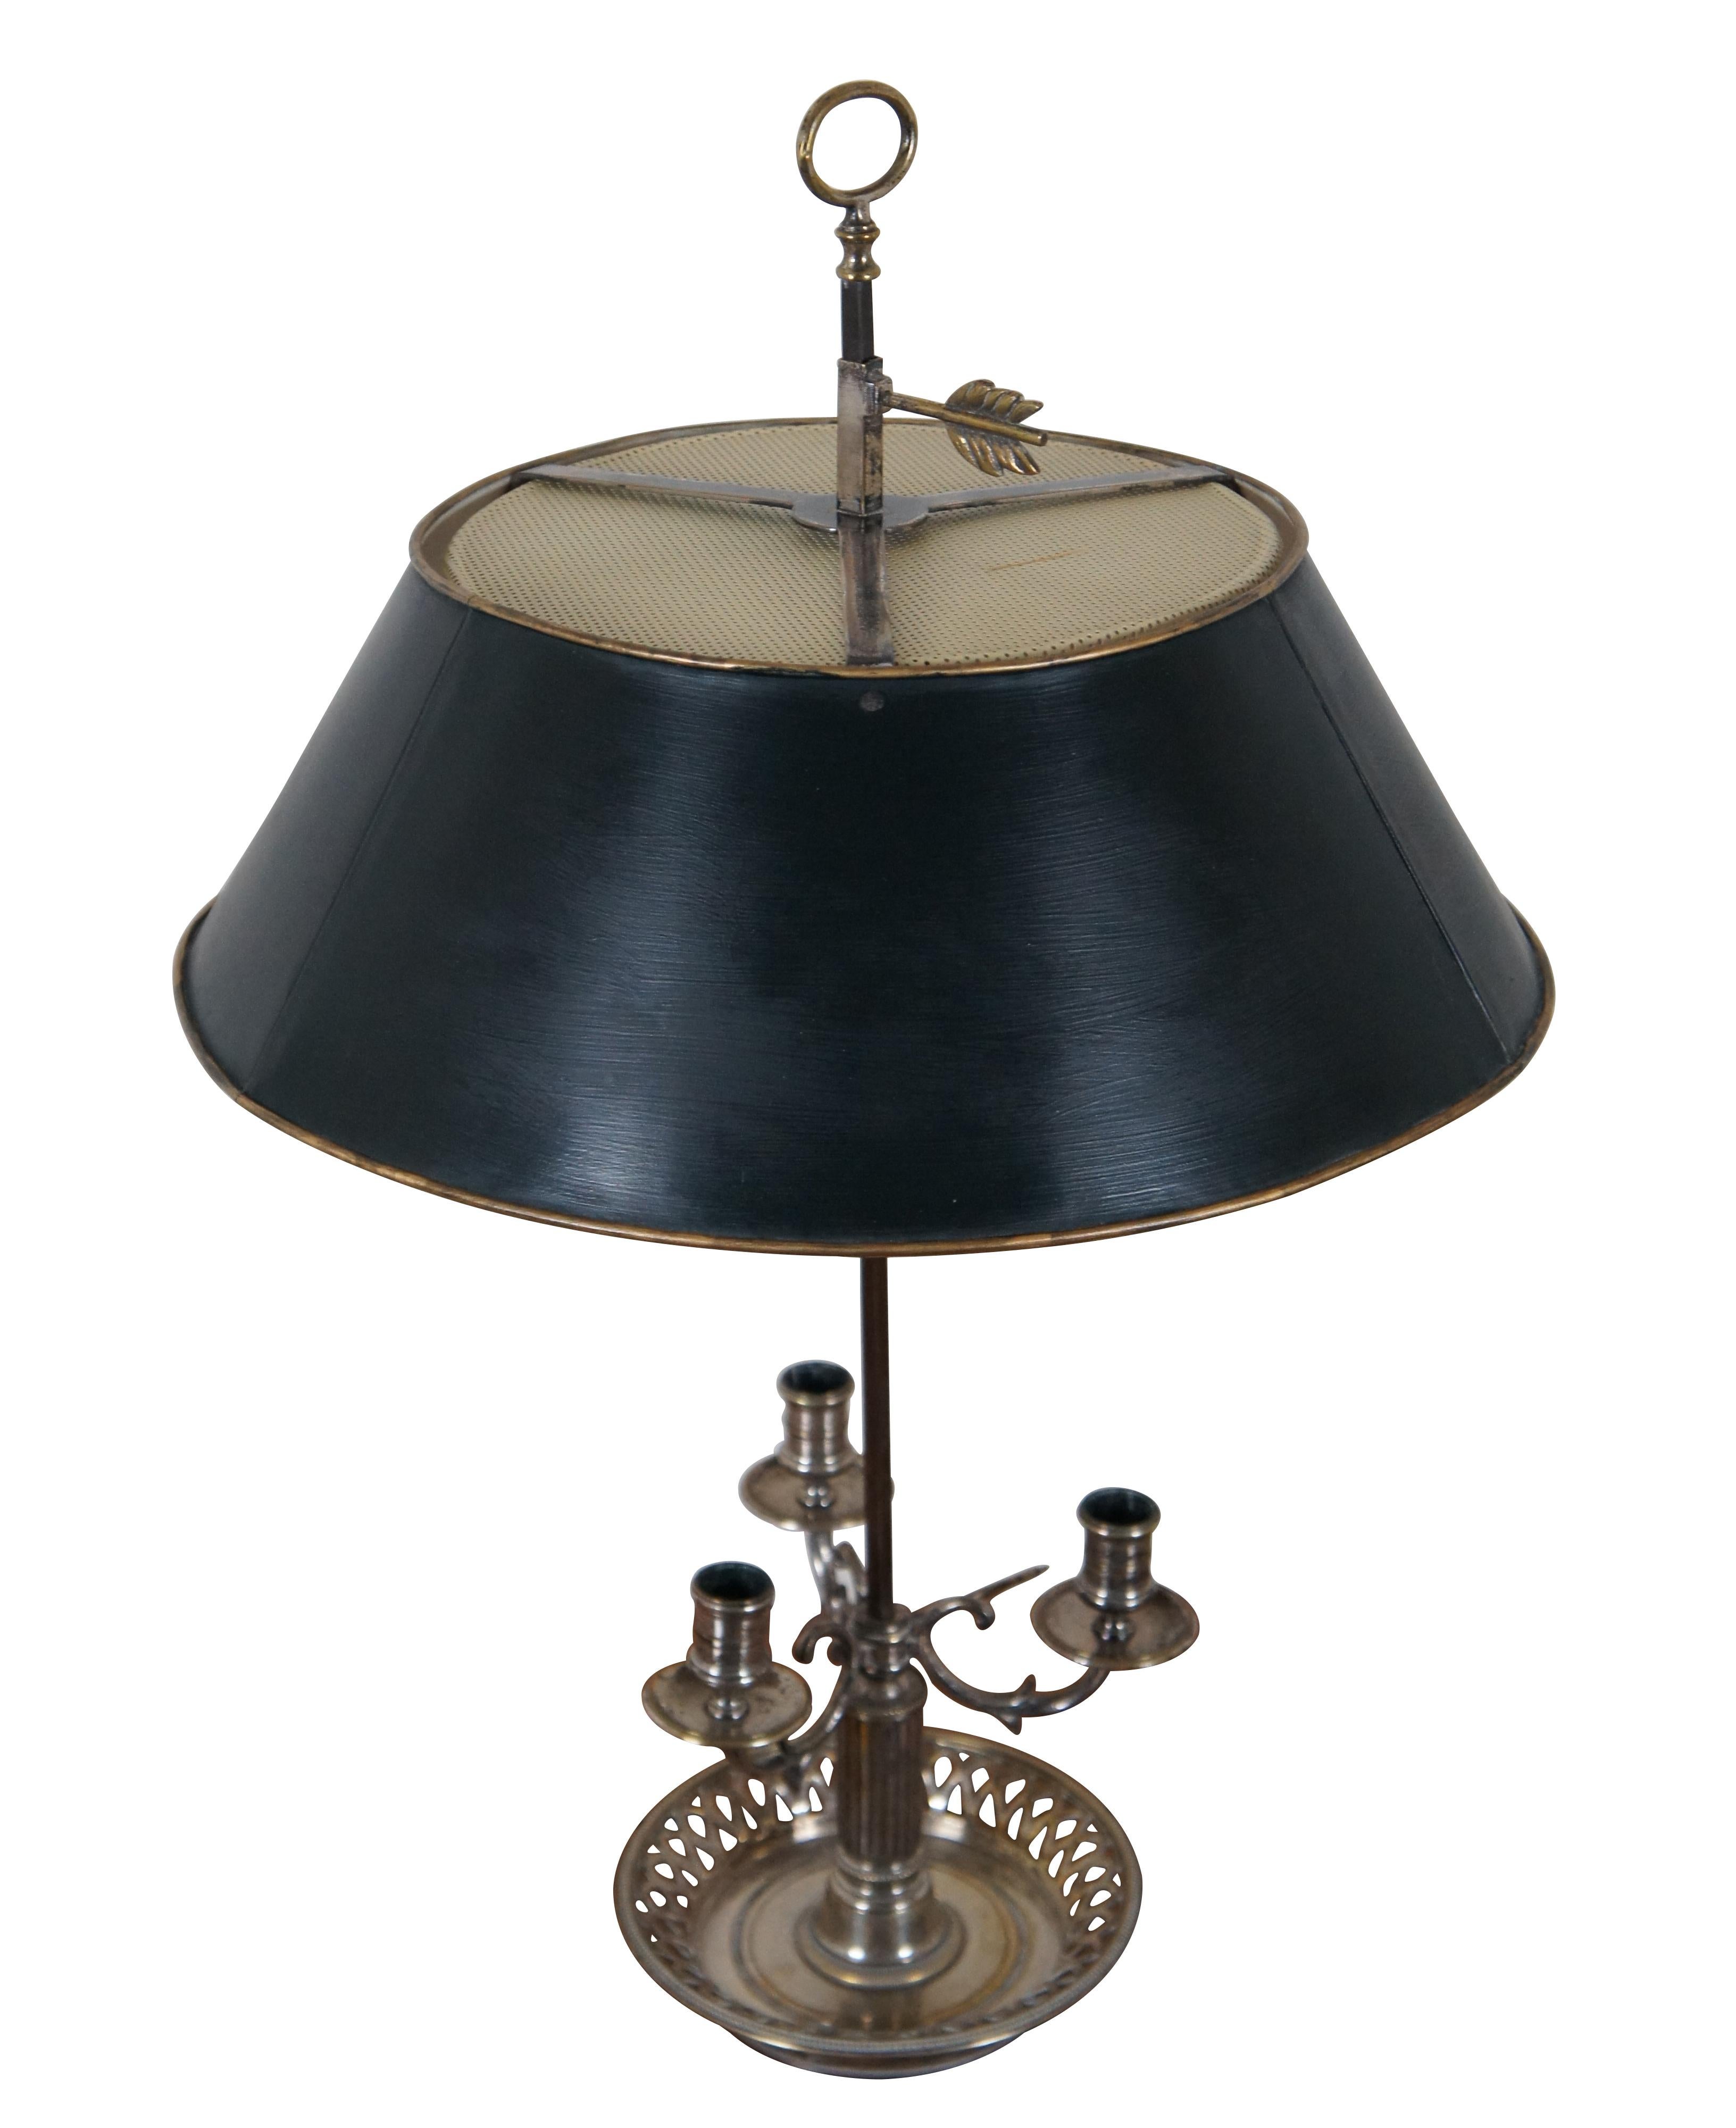 Lampe de table antique néoclassique Bouillotte / Directoire / Hot Water Bottle en métal argenté à trois lumières, présentant une base ajourée / réticulée avec une colonne cannelée supportant un candélabre à trois bras (hauteur réglable) avec un épi